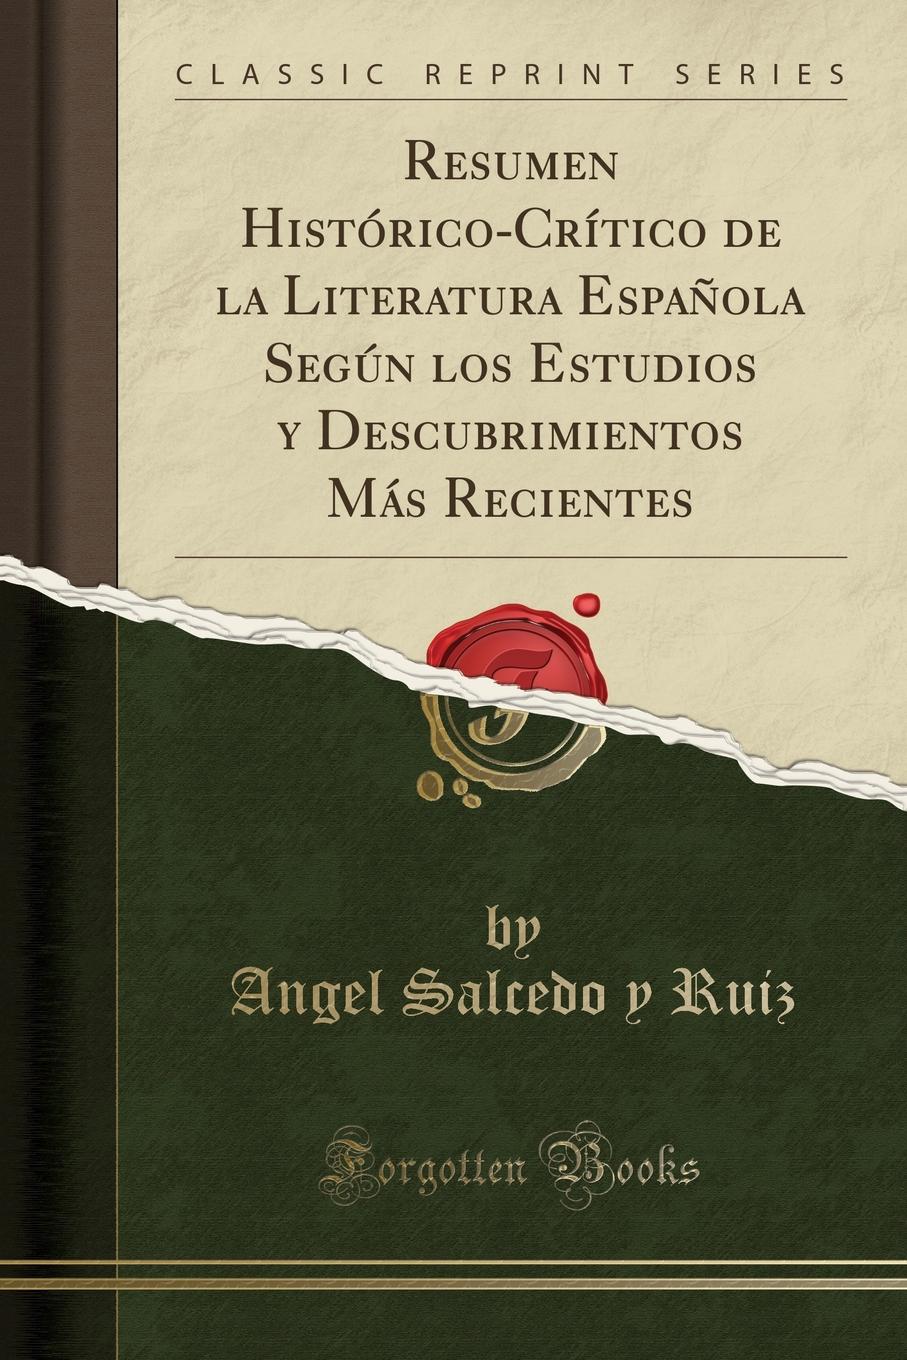 Resumen Historico-Critico de la Literatura Espanola Segun los Estudios y Descubrimientos Mas Recientes (Classic Reprint)